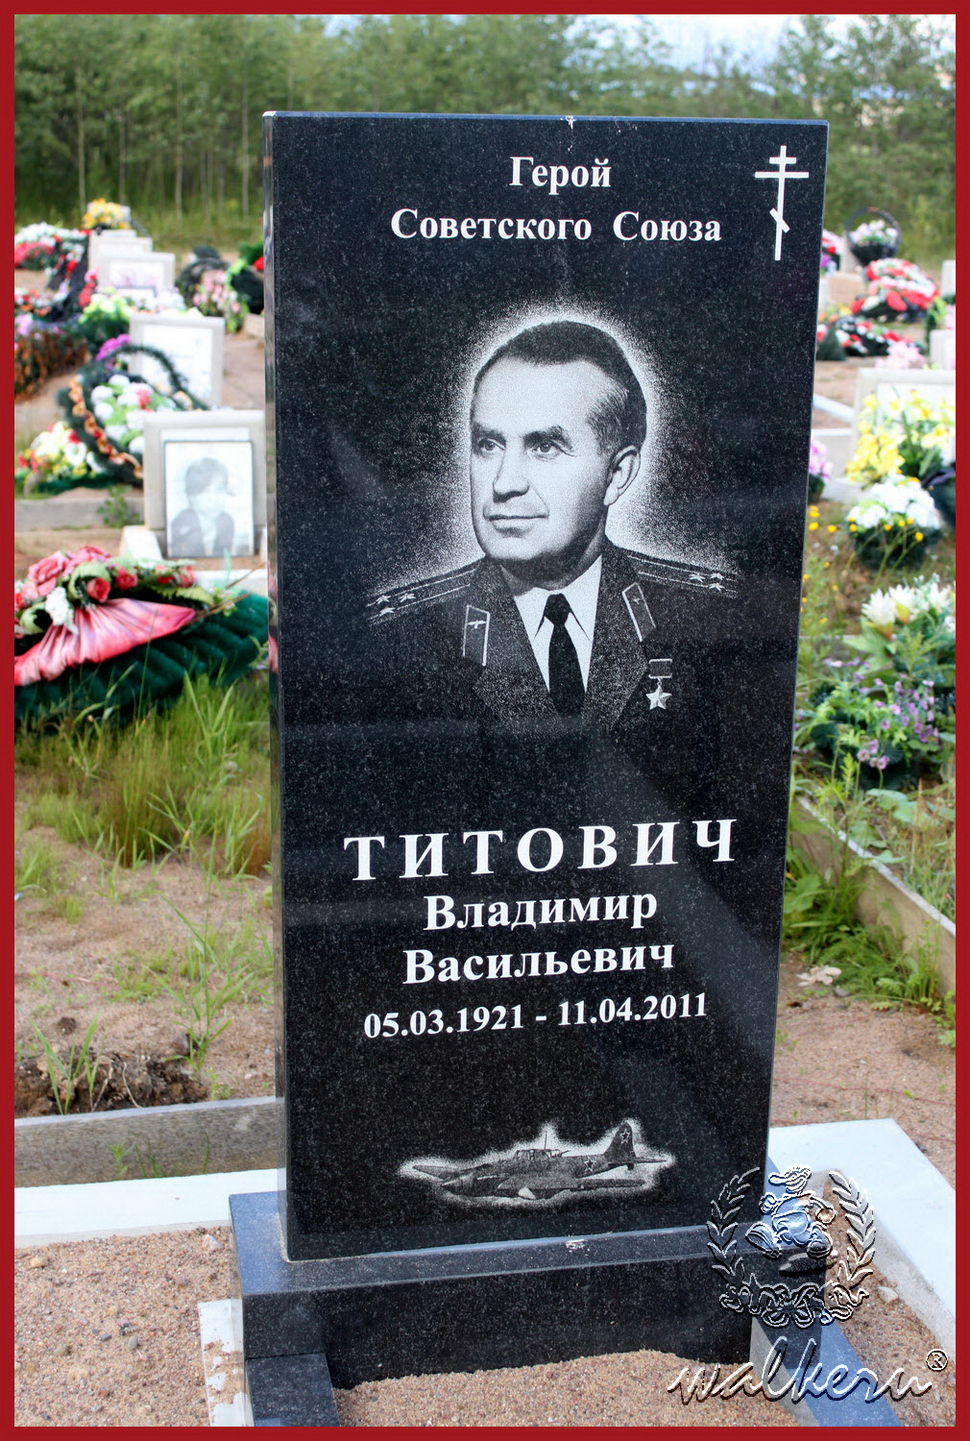 Могила Титовича В.В. на Северном кладбище